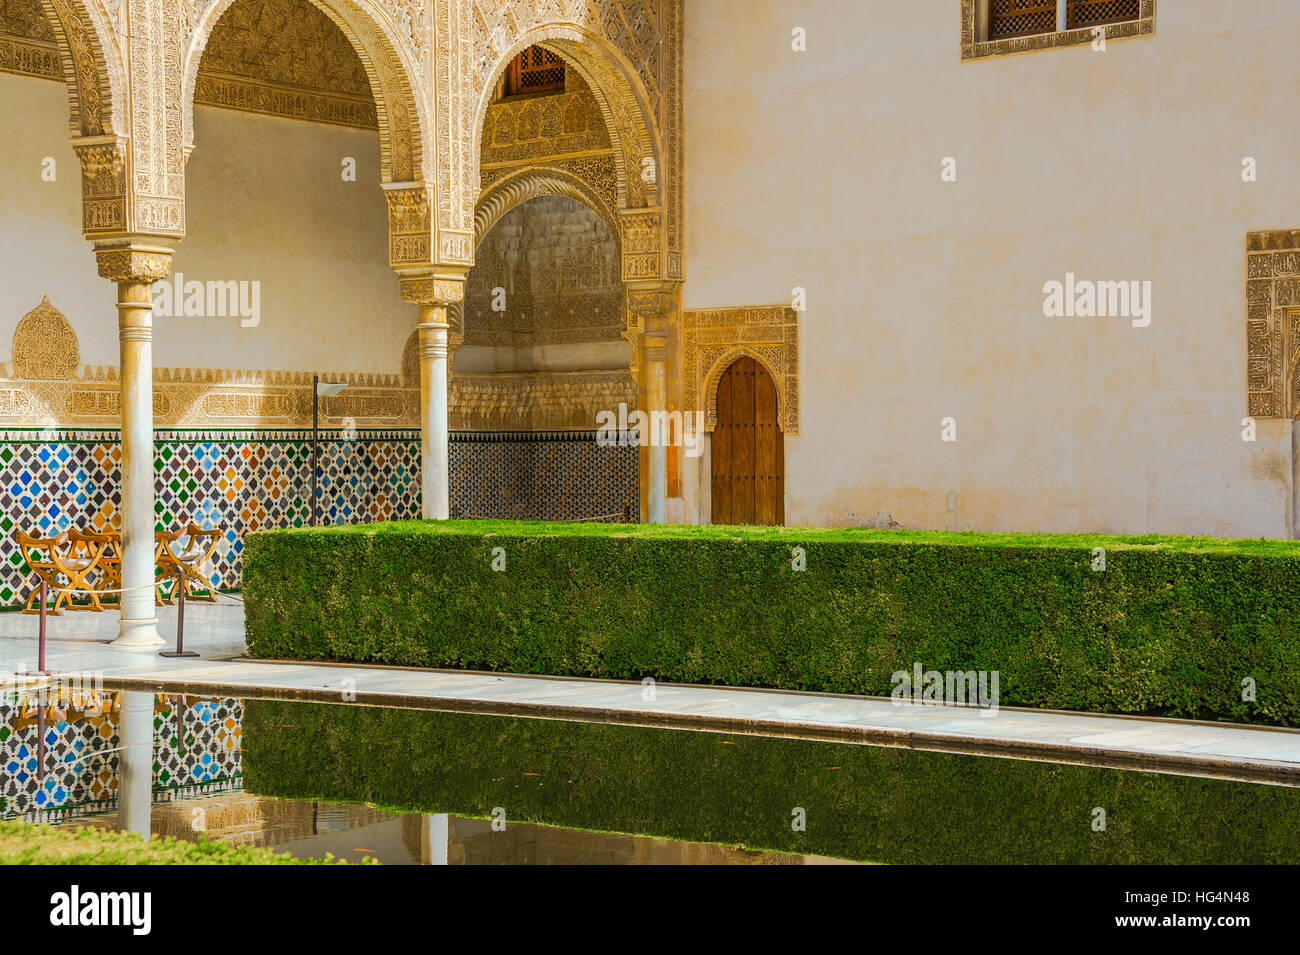 Patio de Los Arrayanes, Hof des Myrthen mit Reflexion, Innercourt der Nasriden Palast, Alhambra in Granada, Andalusien, Spanien Stockfoto